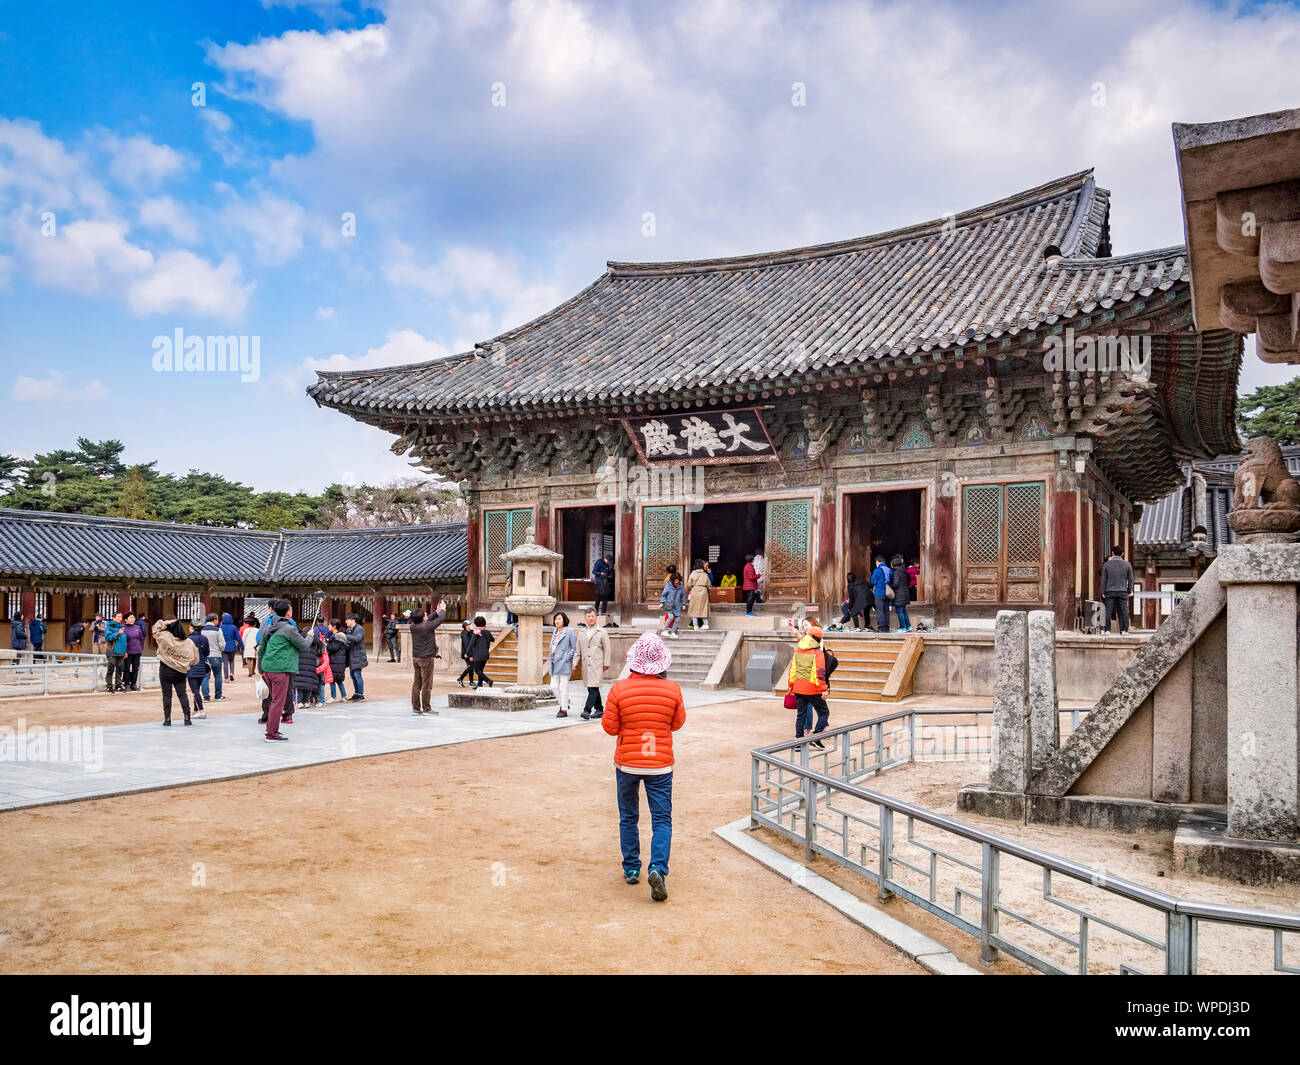 El 31 de marzo de 2019: Gyeong-Ju, Corea del Sur - los visitantes en el templo budista de Bulguksa, Gyeong-Ju, sitio del Patrimonio Mundial de la UNESCO. Foto de stock